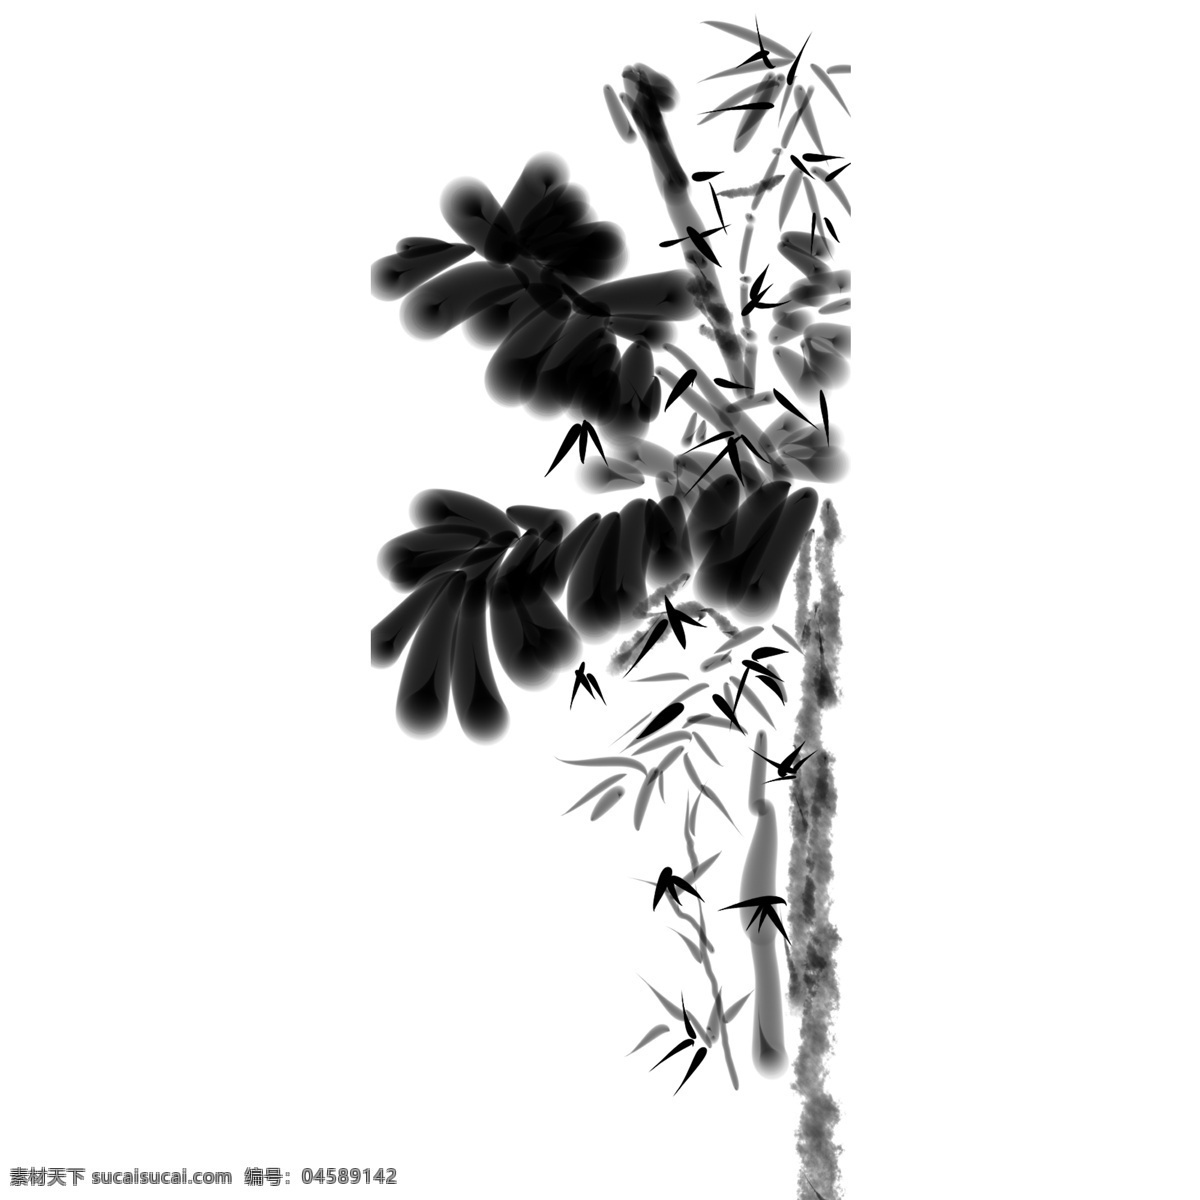 中国 风 水墨画 竹子 免 抠 图 中国风 植物 免抠图 黑白水墨画 意境悠远 独具特色